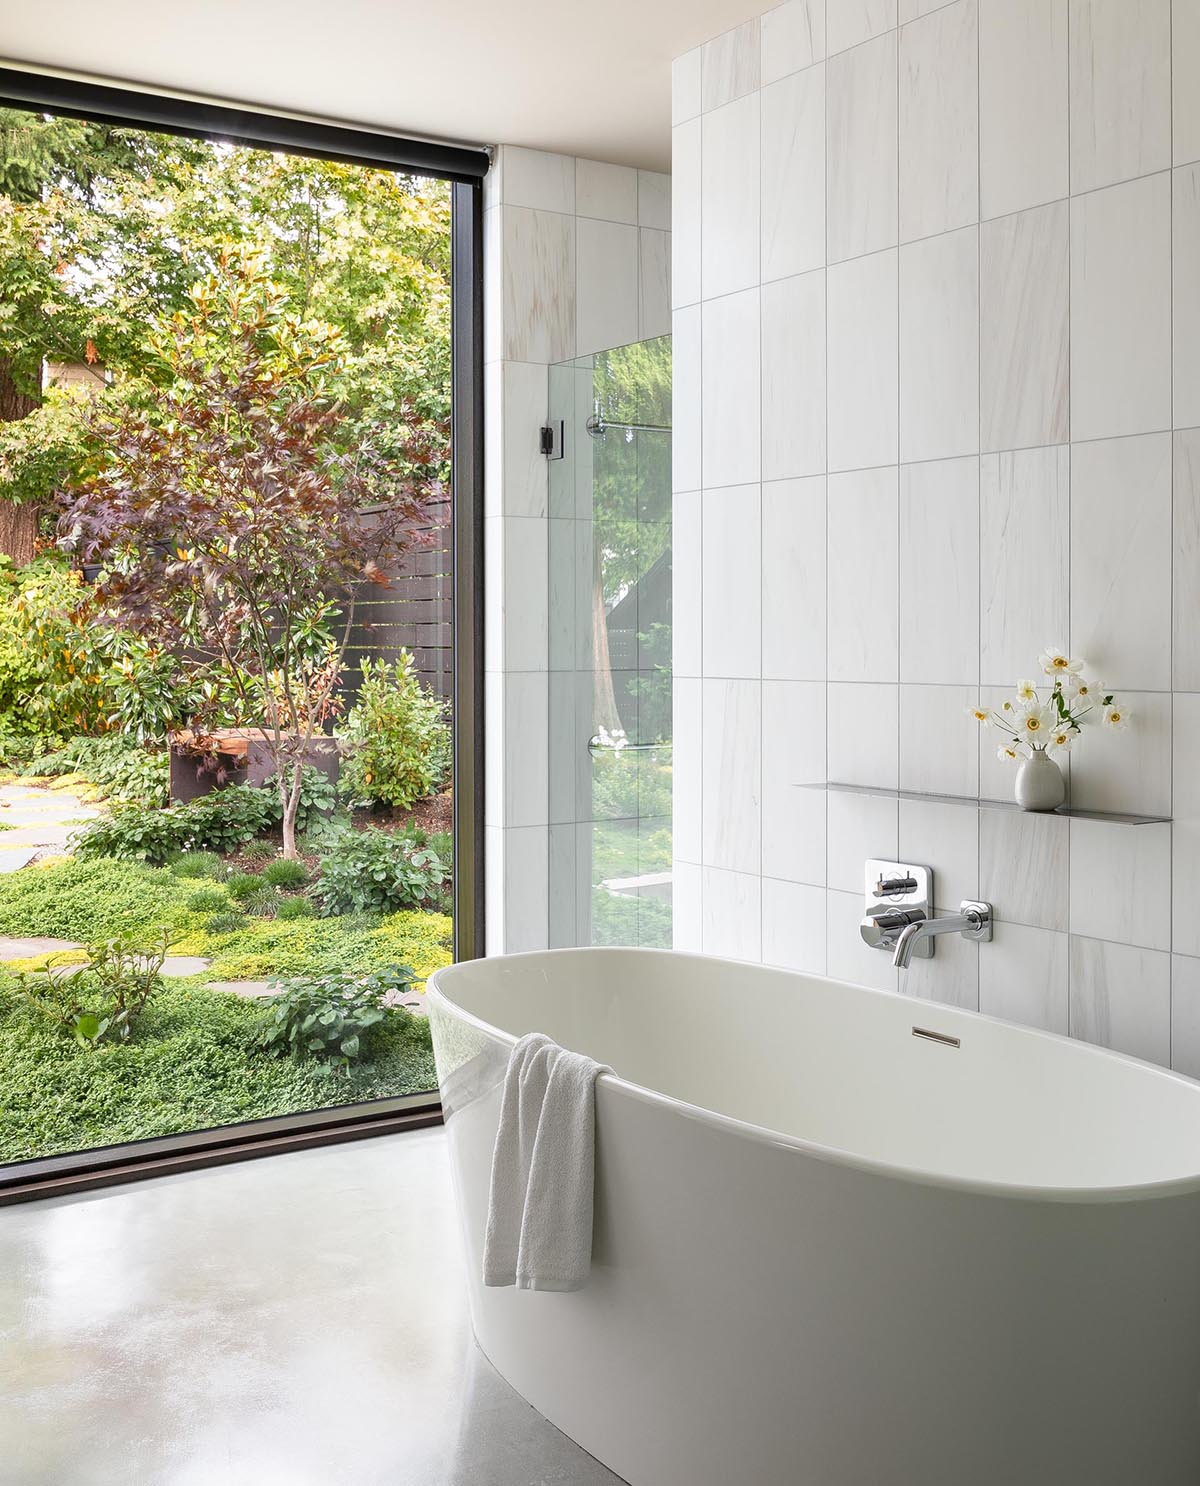 В этой современной главной ванной комнате белая плитка служит фоном для отдельно стоящей ванны и душевой кабины.